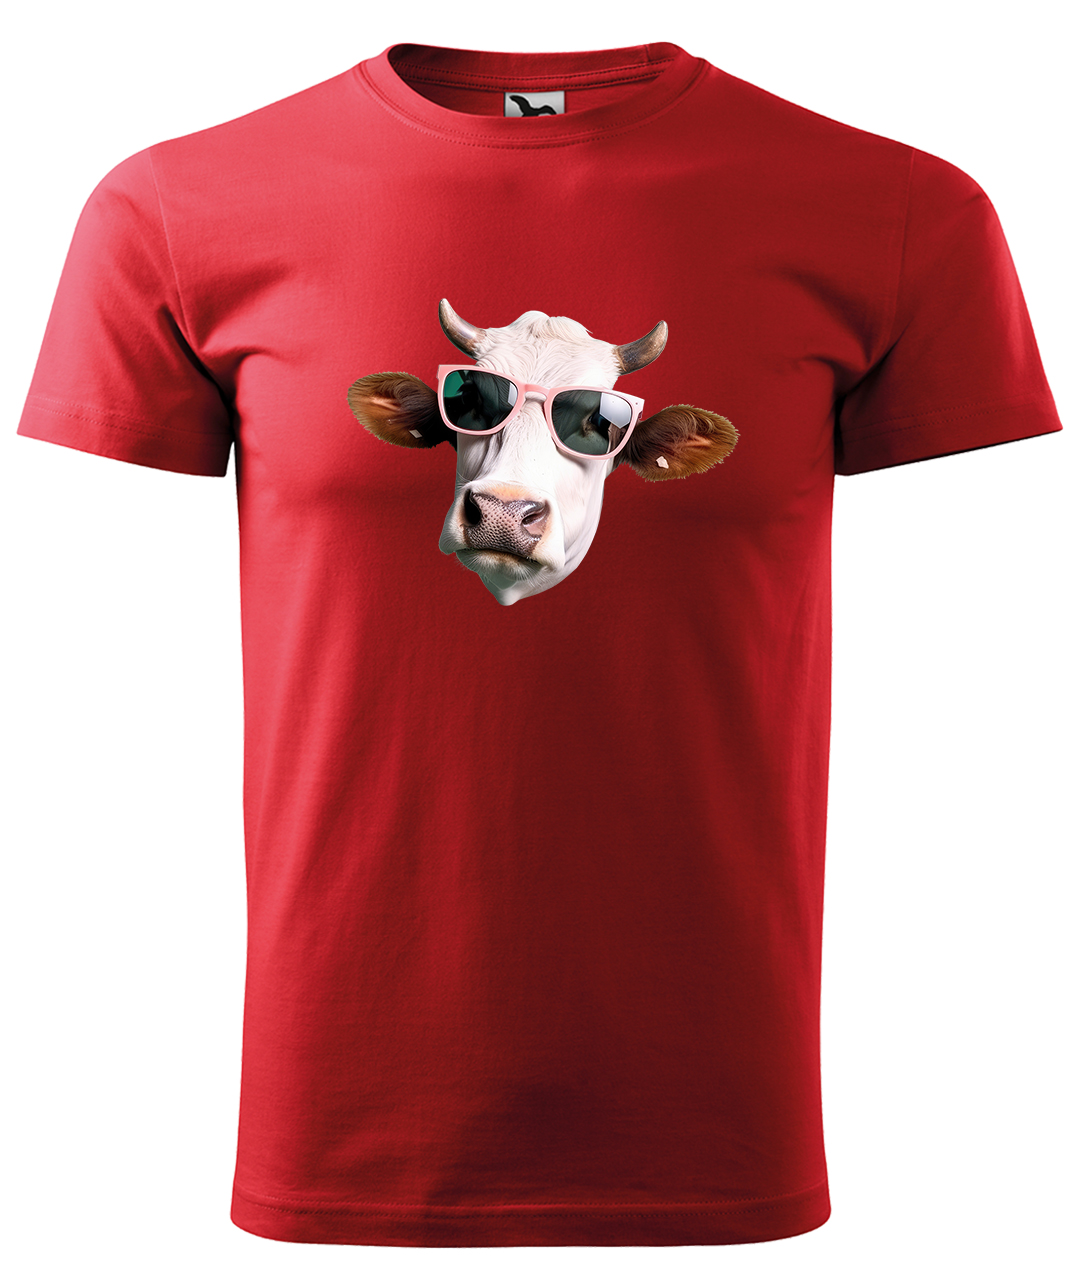 Dětské tričko s krávou - Kráva v brýlích Velikost: 4 roky / 110 cm, Barva: Červená (07), Délka rukávu: Krátký rukáv